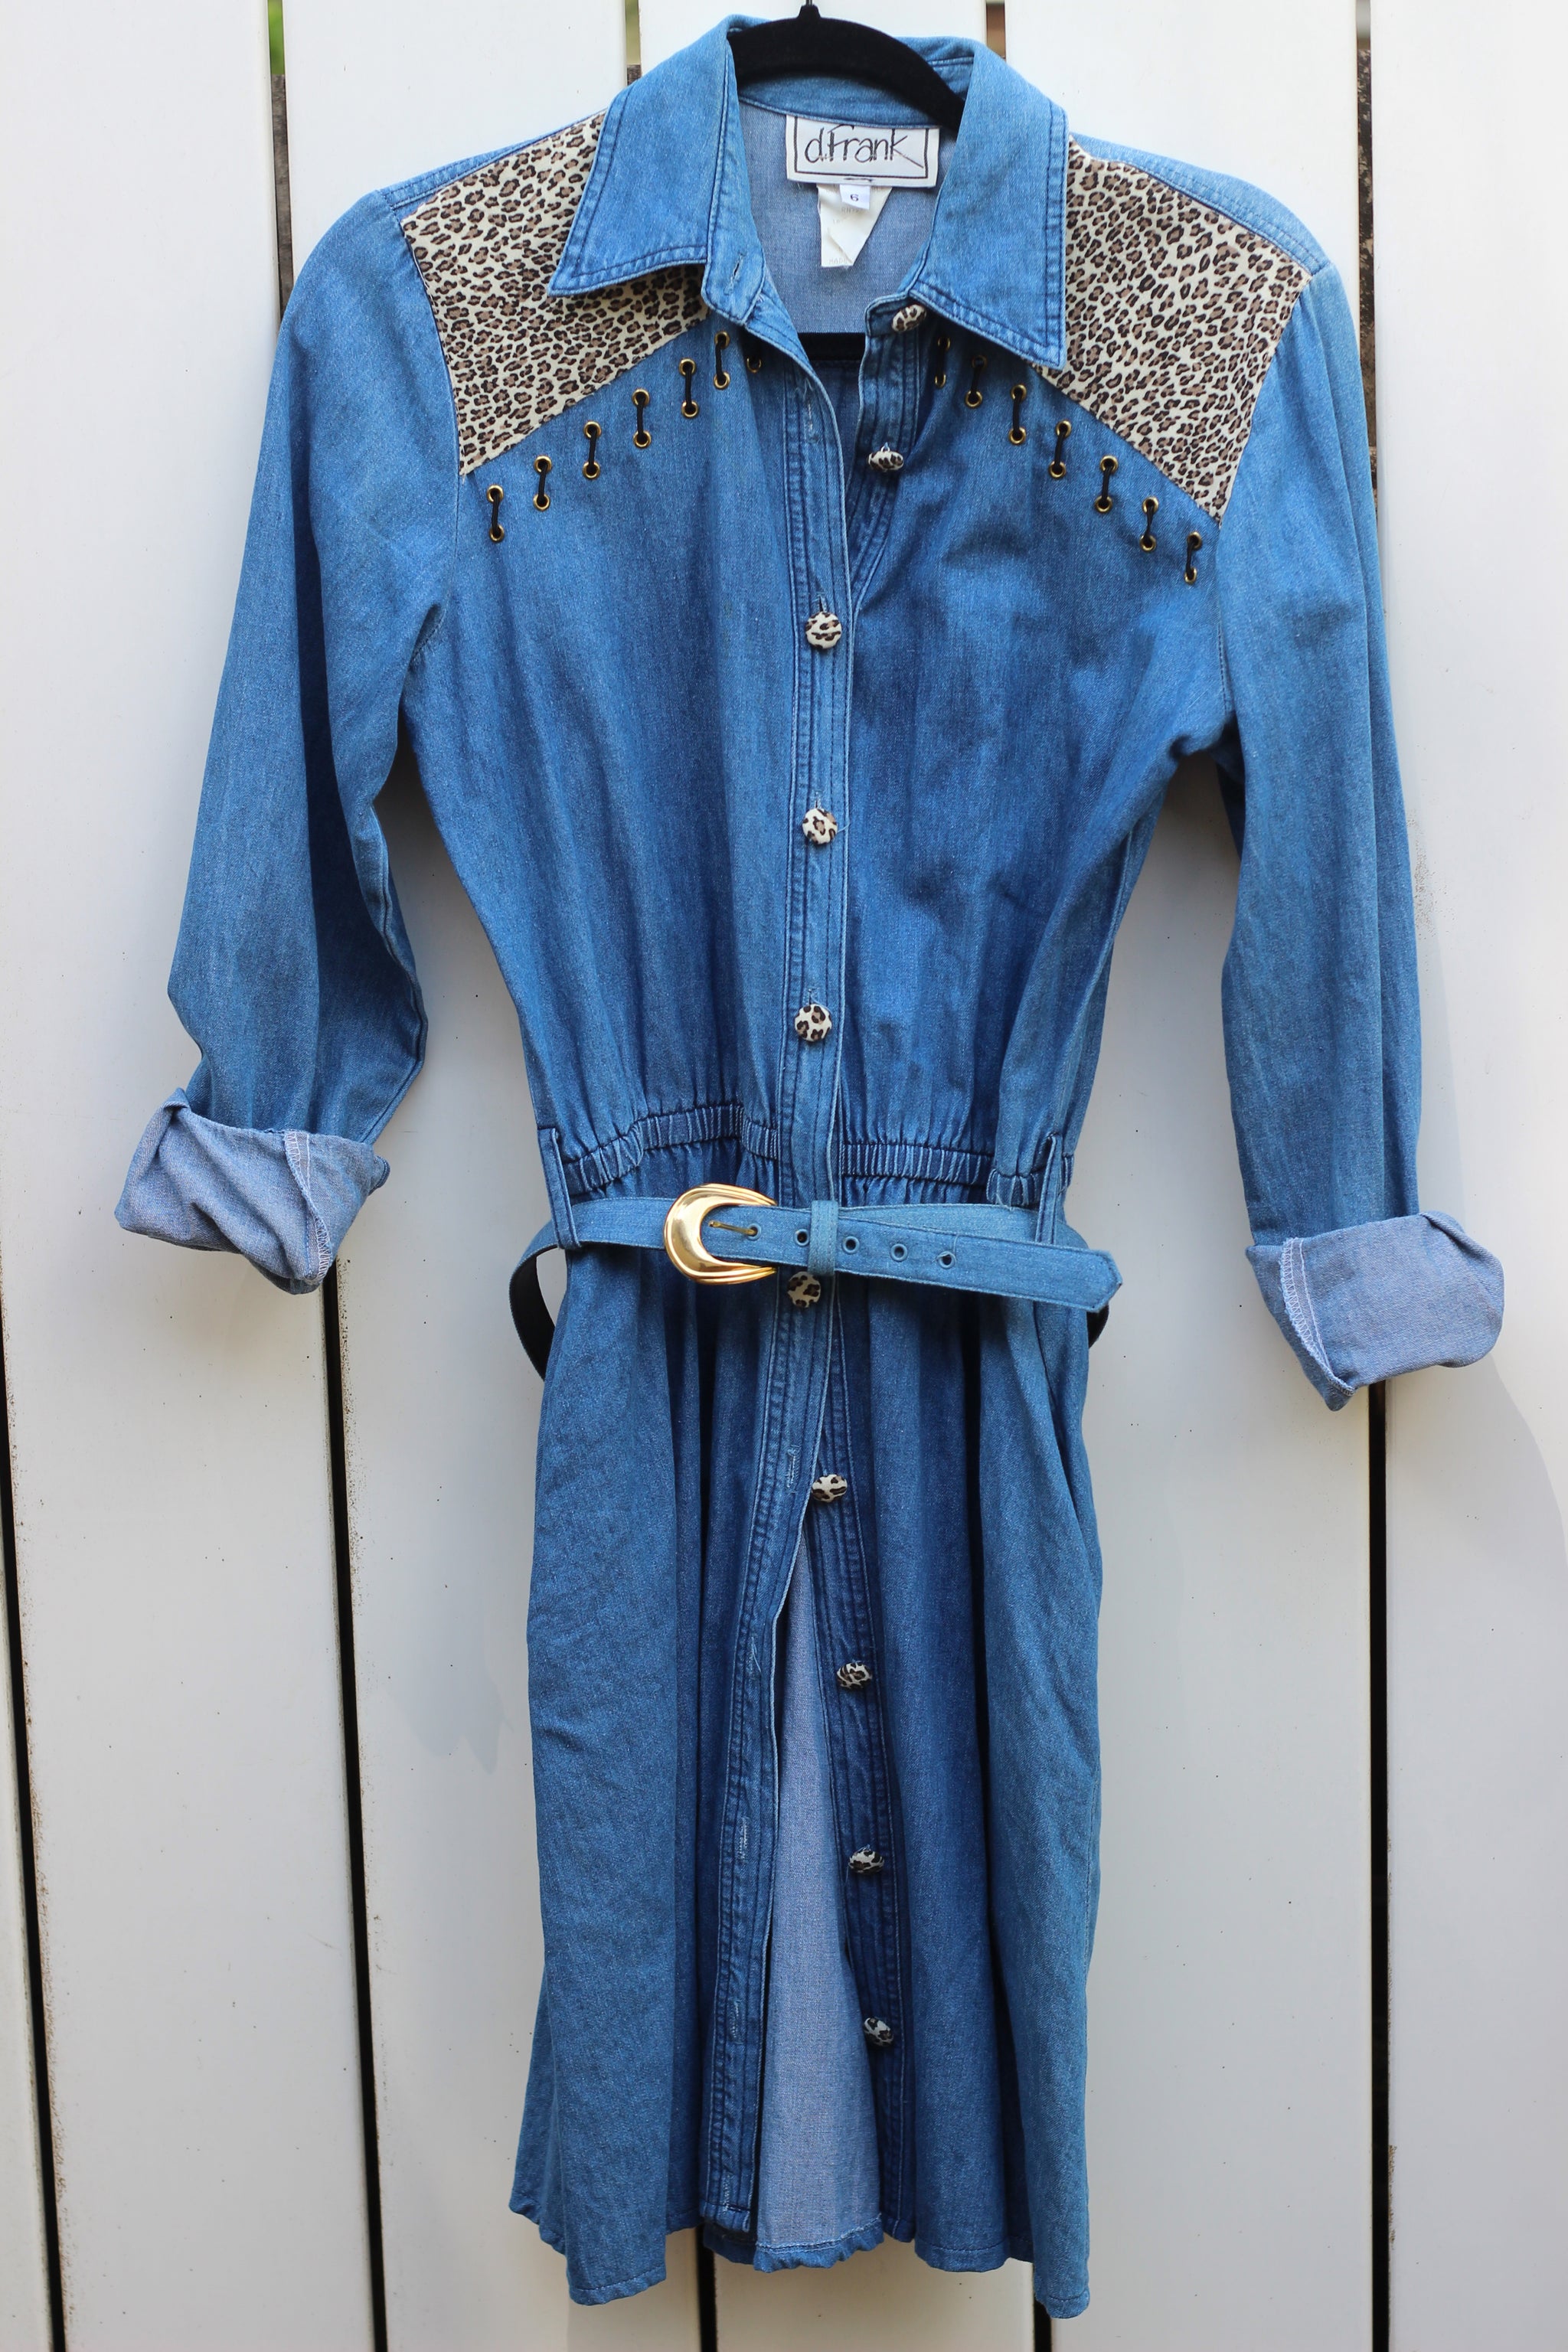 Vintage Denim & Leopard Button Up Dress (XS/S)